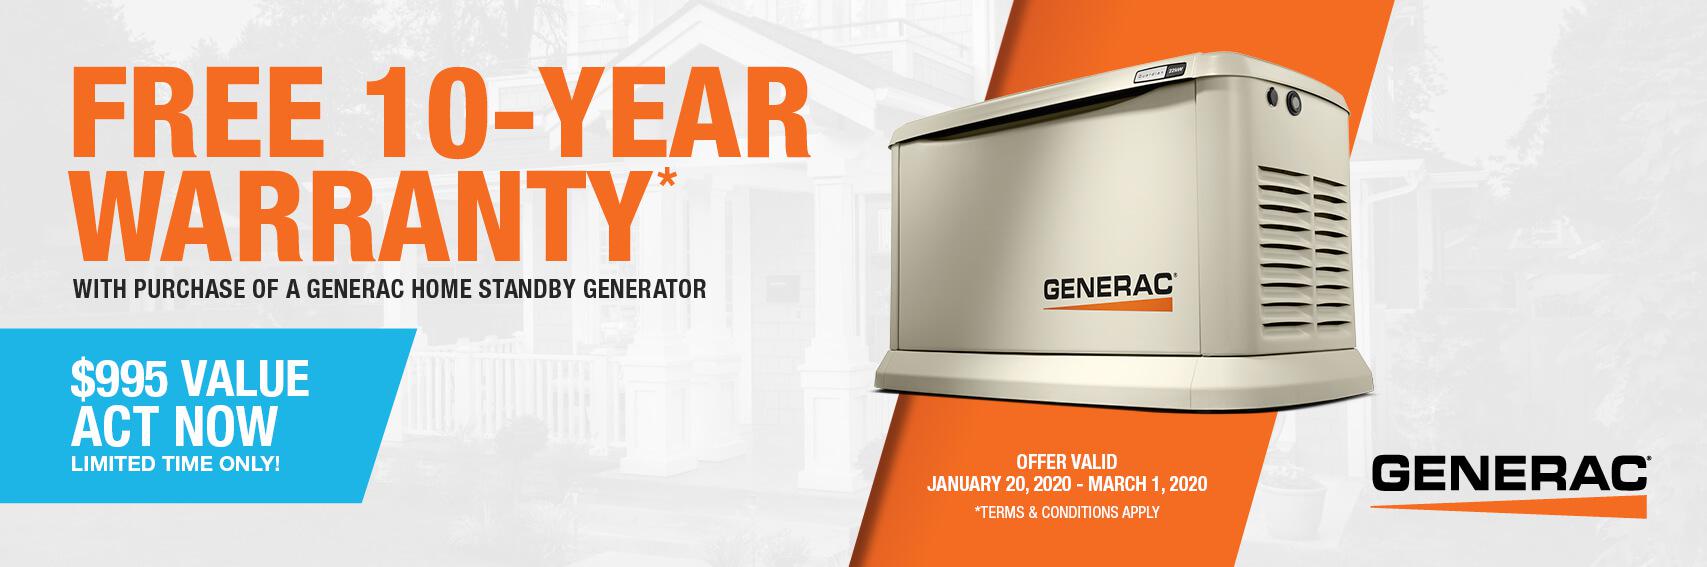 Homestandby Generator Deal | Warranty Offer | Generac Dealer | ALBION, PA